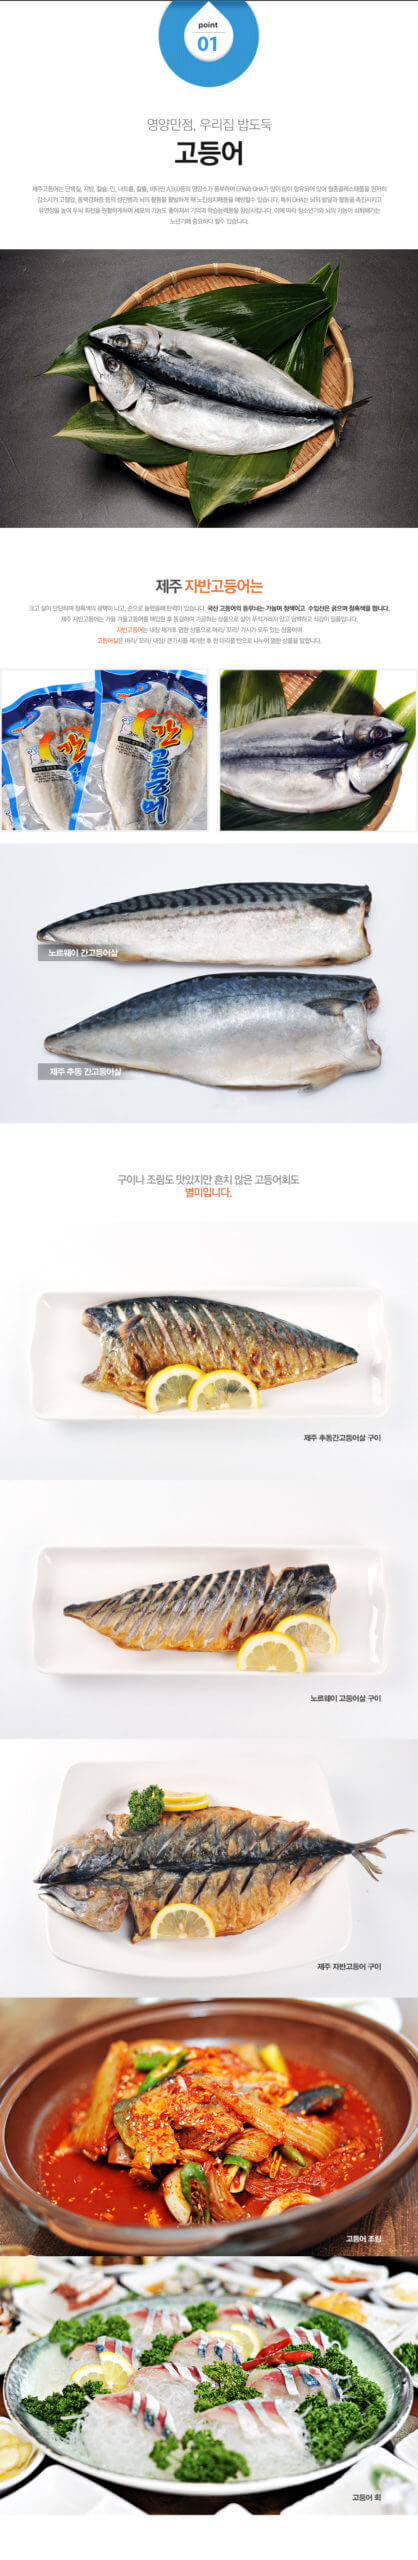 韓國食品-제주 자반고등어 250g이상